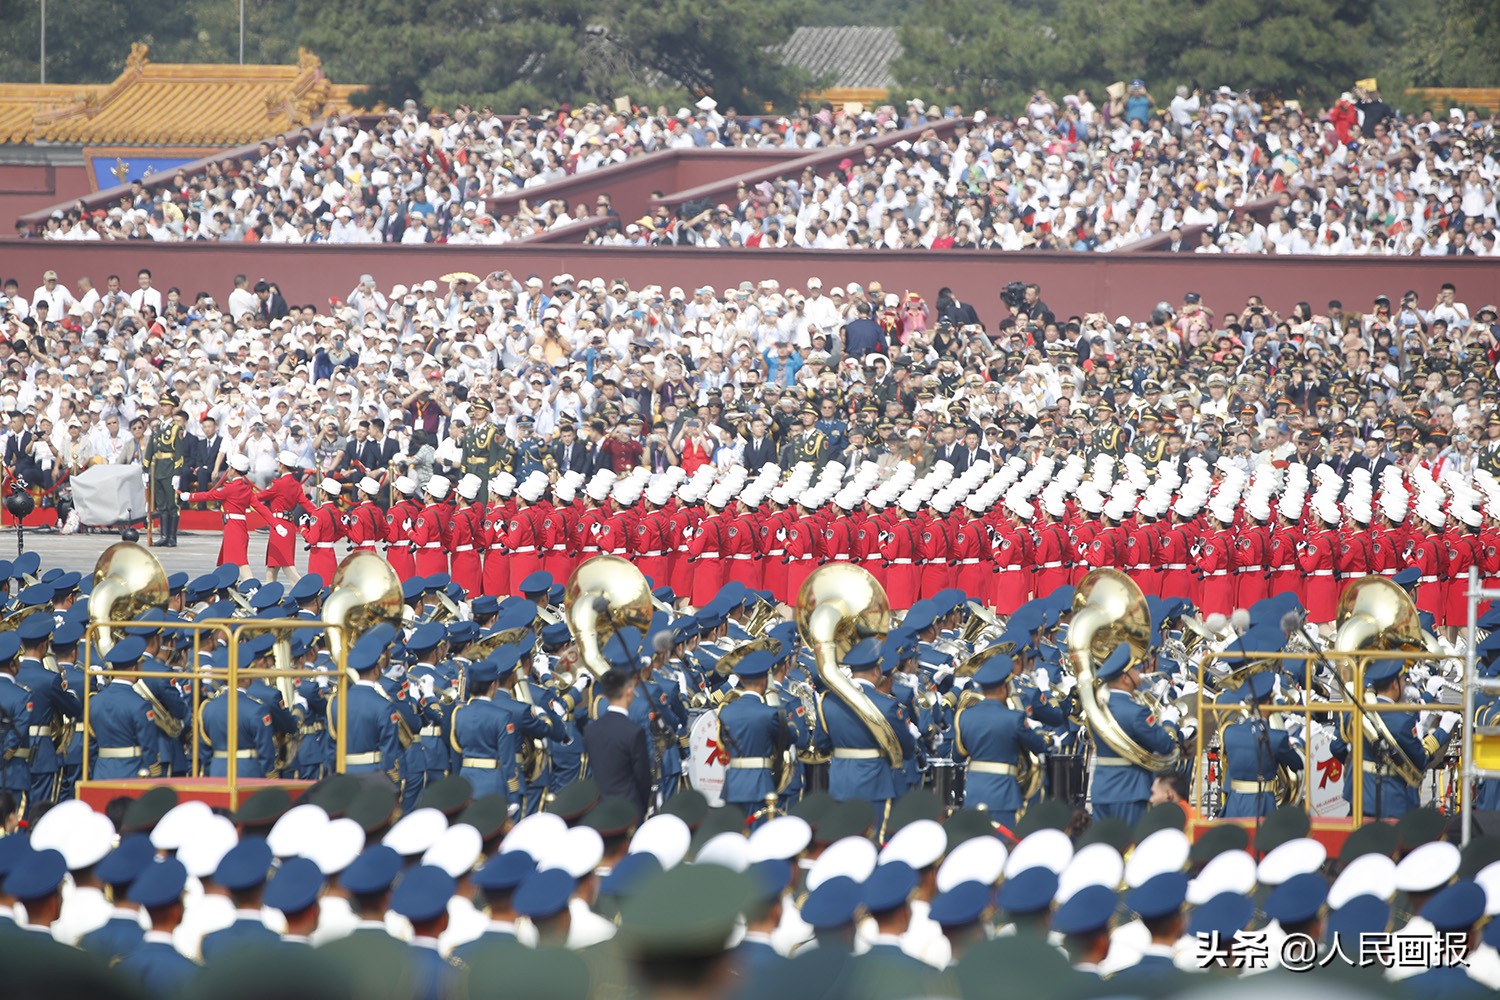 建党100周年阅兵中国图片